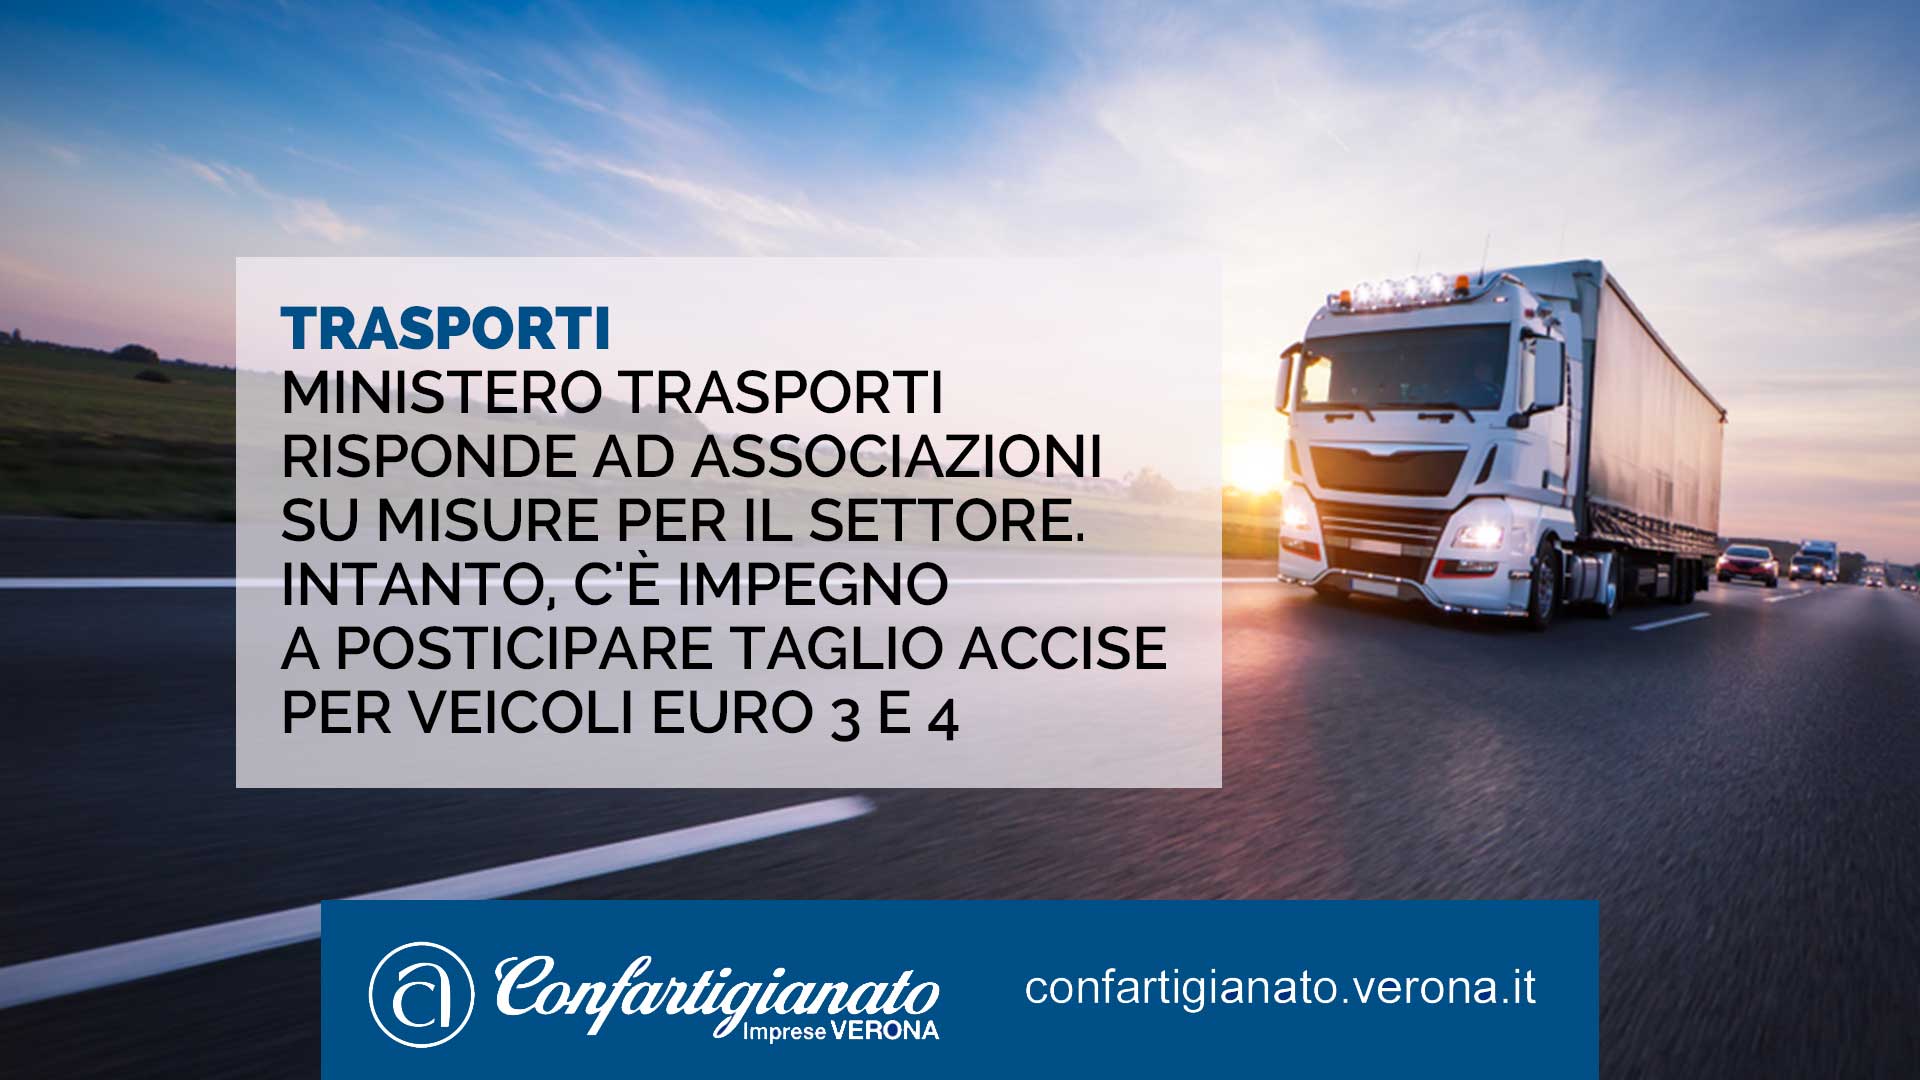 TRASPORTI – Ministero Trasporti risponde alle imprese sulle misure per il settore. Intanto, c'è l'impegno a posticipare il taglio accise per veicoli Euro 3 e 4